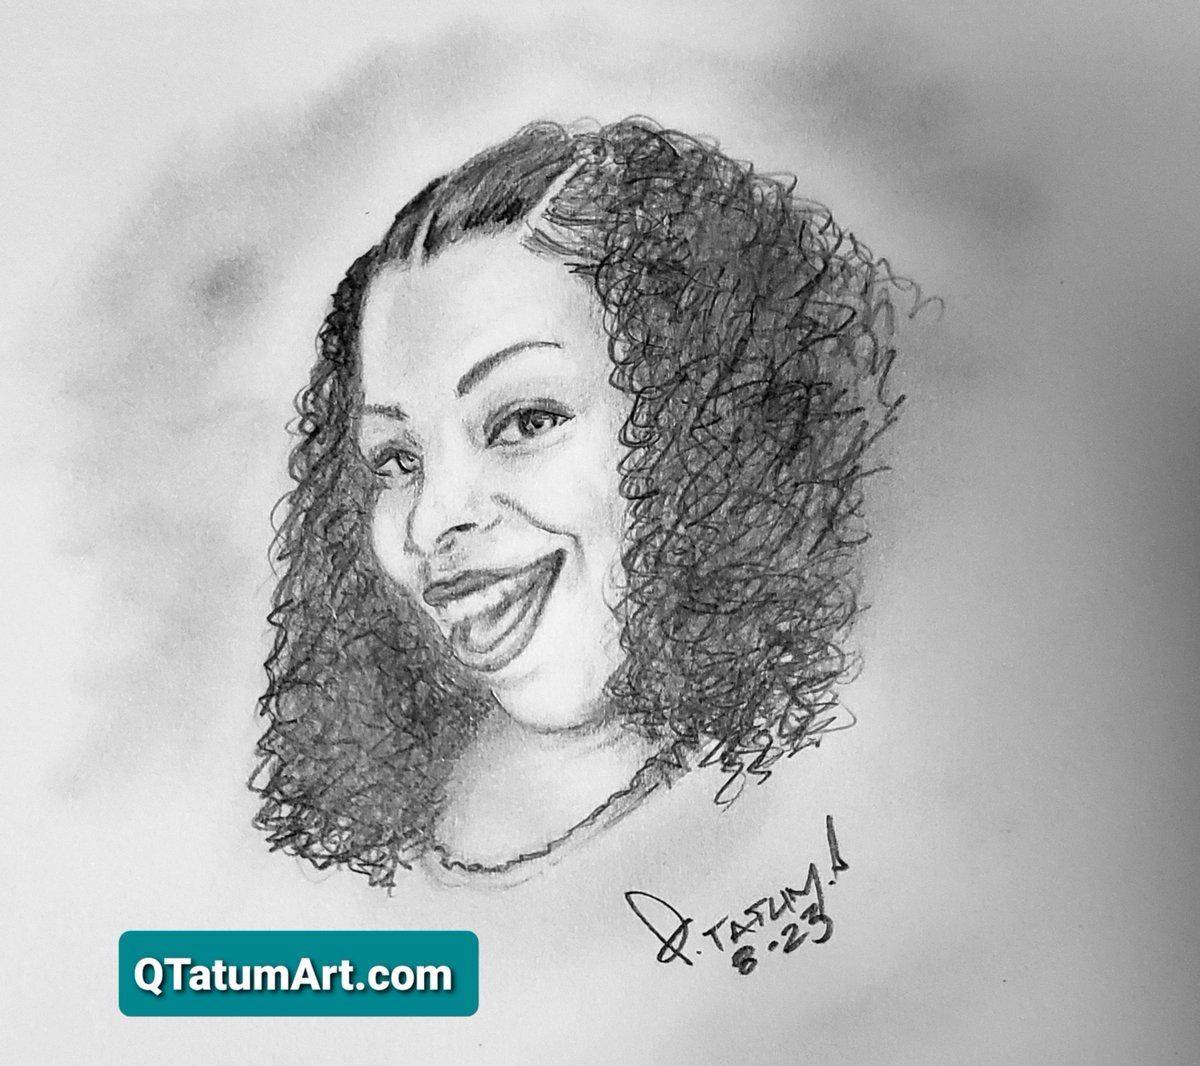 Happy Birthday Crystal Toliver 
#BirthdayArt #HappyBirthday #PortriatArt #Portrait #PortraitDrawing #ArtOfTheDay #Drawing #DrawingOfTheDay #PencilDrawing #QTatum #Tatumtoon #QTATUMART #QTatum QTatumArt.com